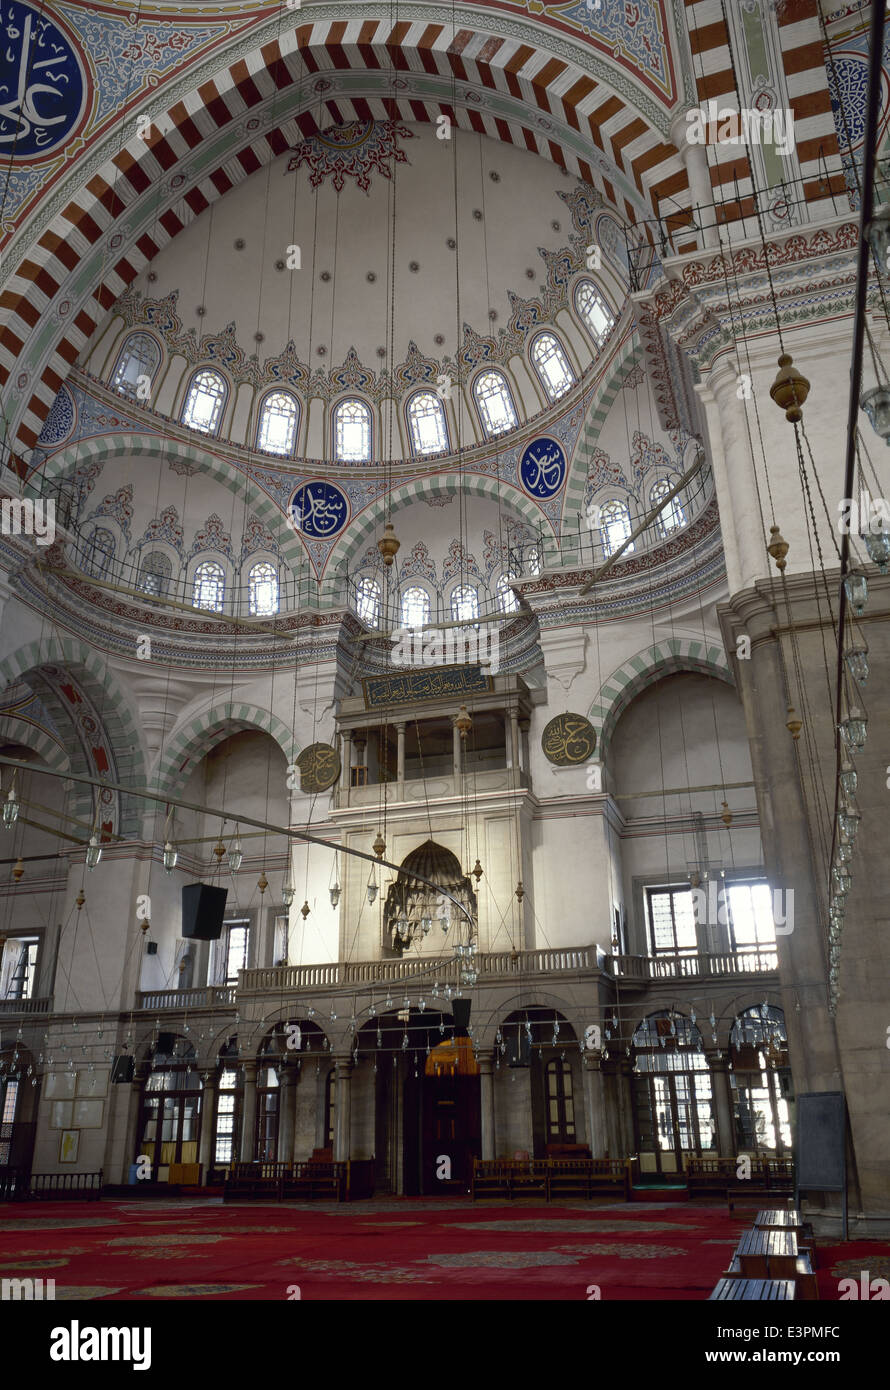 La Turchia. Istanbul. La Moschea Fatih. Stile ottomano. Architetto, Atik Sinan, Mimar Mehmet Tahir. Costruito tra il 1463-1470. Foto Stock